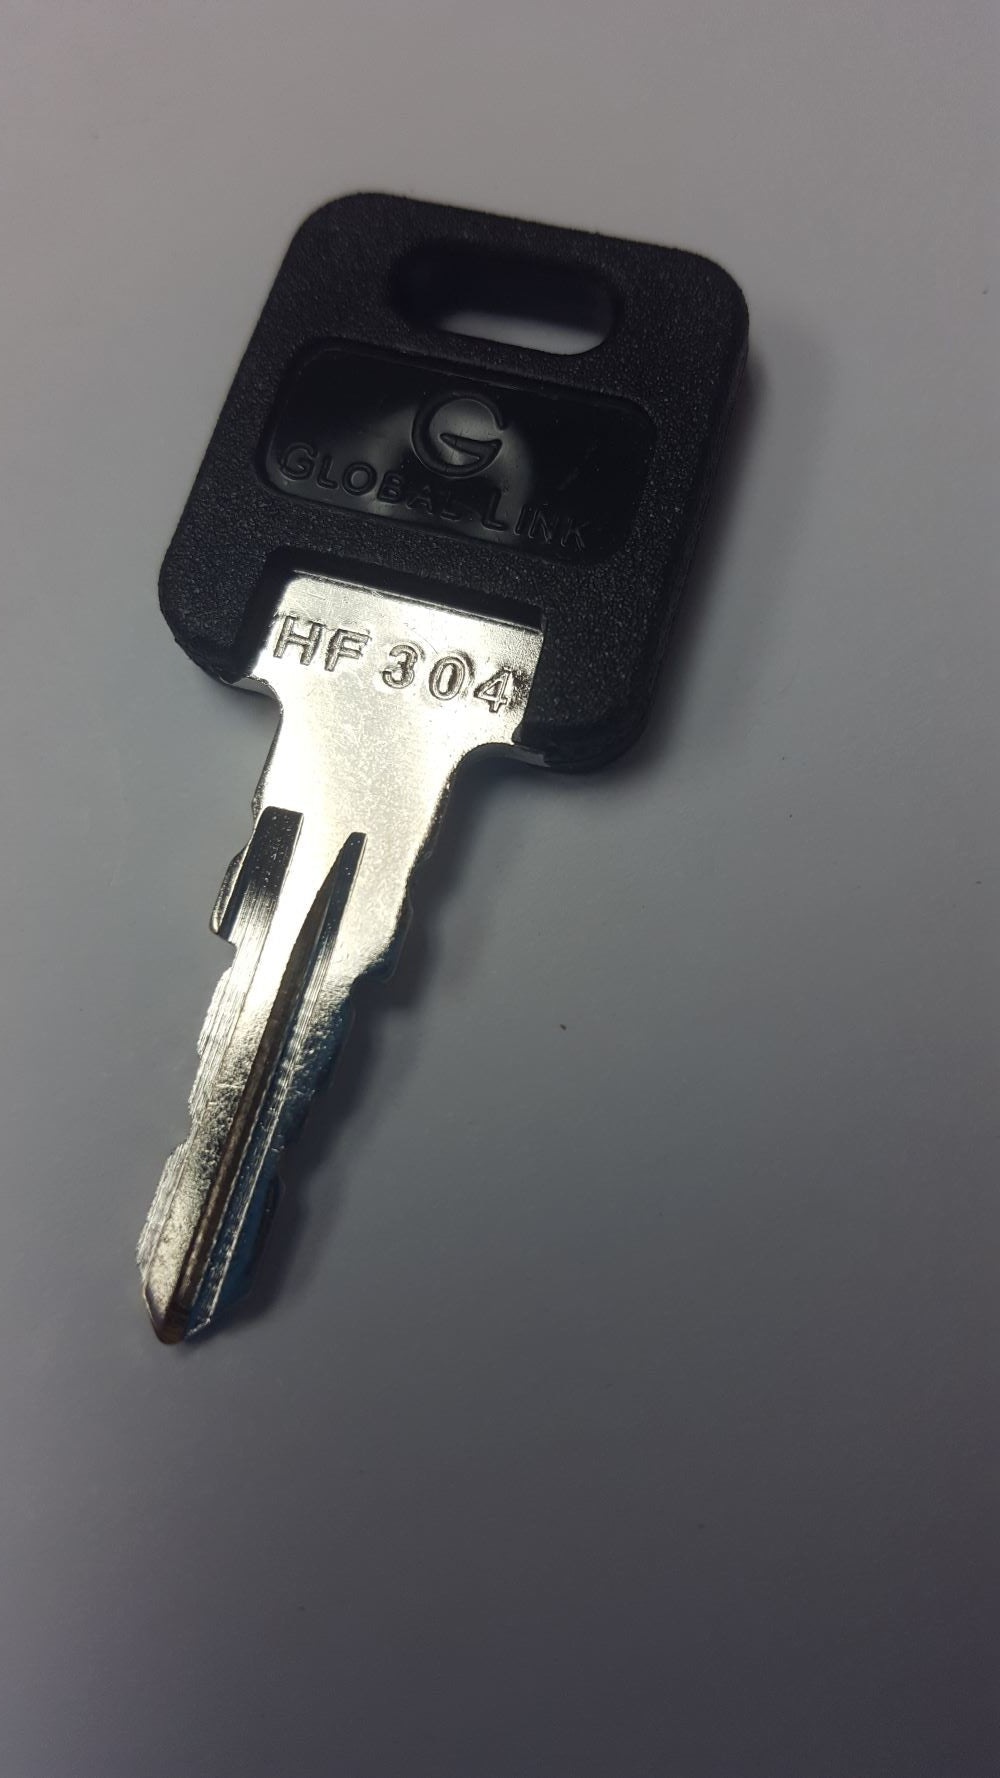 CPG KEY-HF-304 Pre-cut Stamped FIC Replacemnt HF304 Key